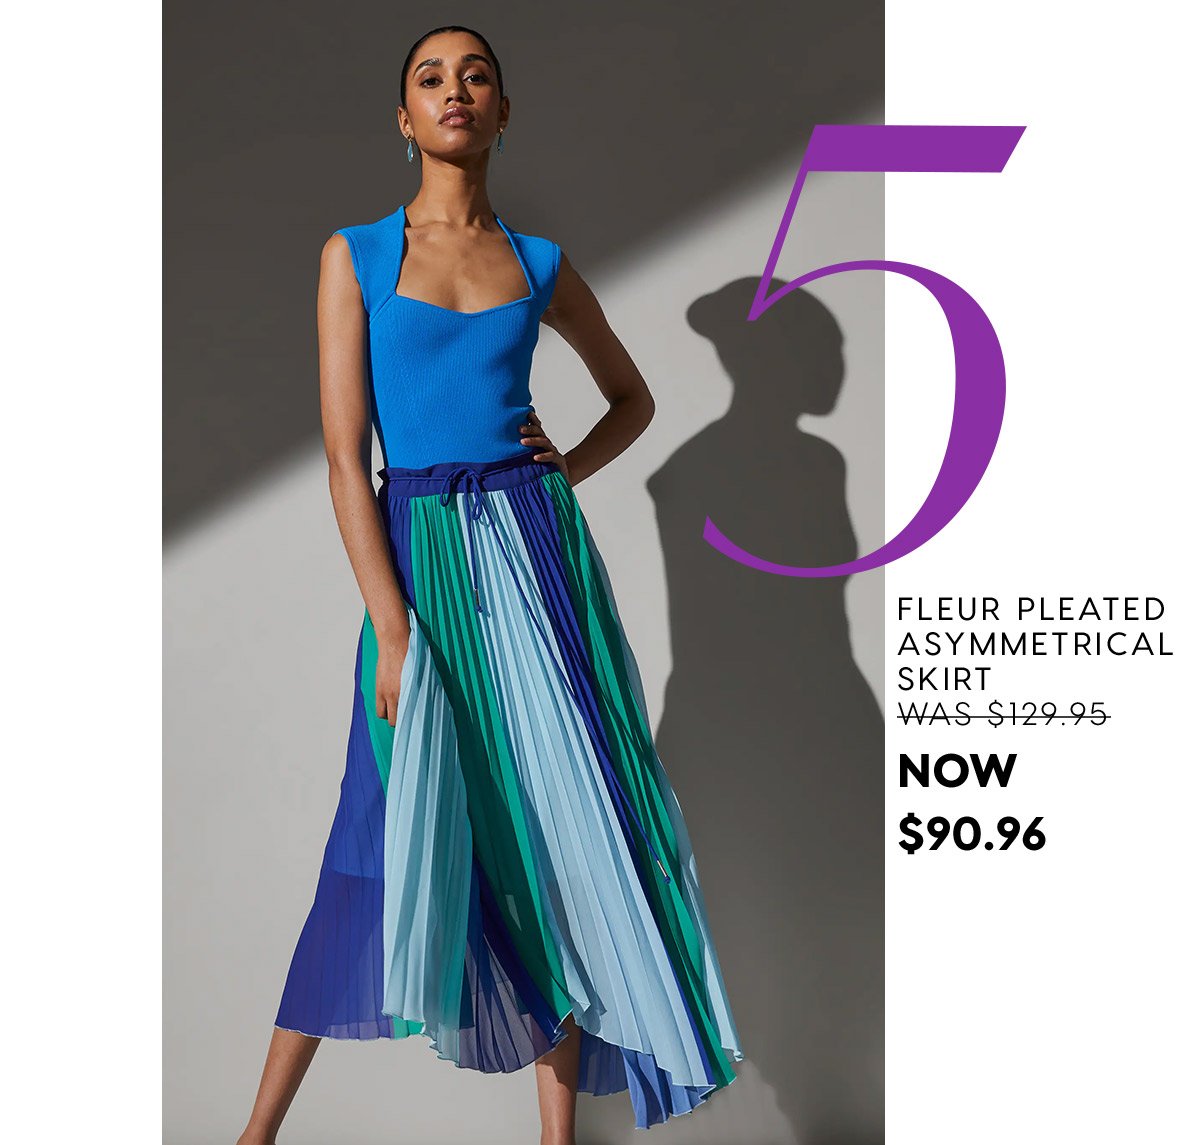 Fleur Pleated Asymmetrical Skirt WAS $129.95 NOW  $90.96